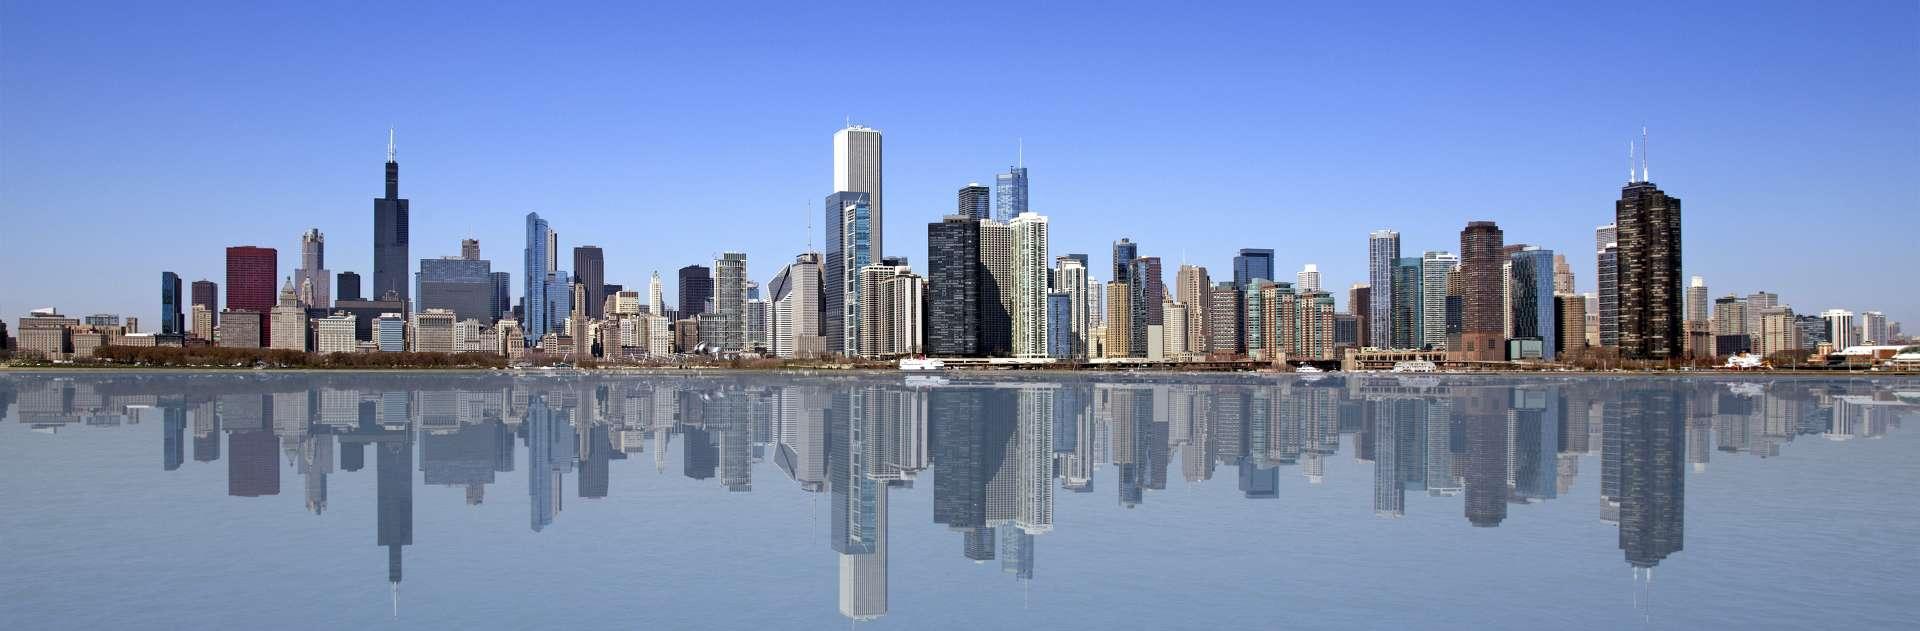 Weite Ansicht von Chicago mit Reflexion auf dem Wasser